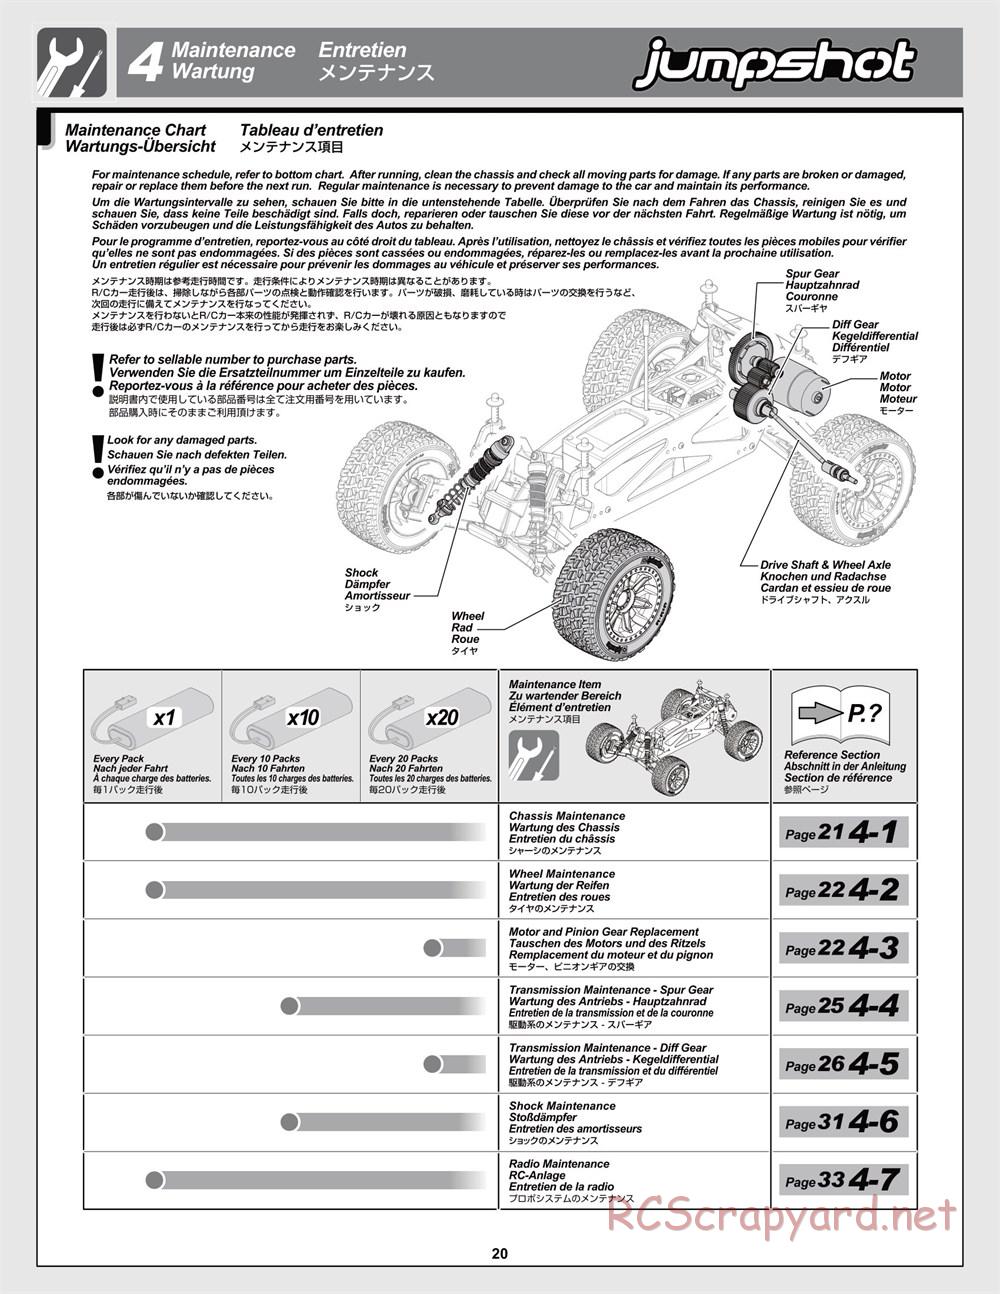 HPI - Jumpshot MT Flux - Manual - Page 20